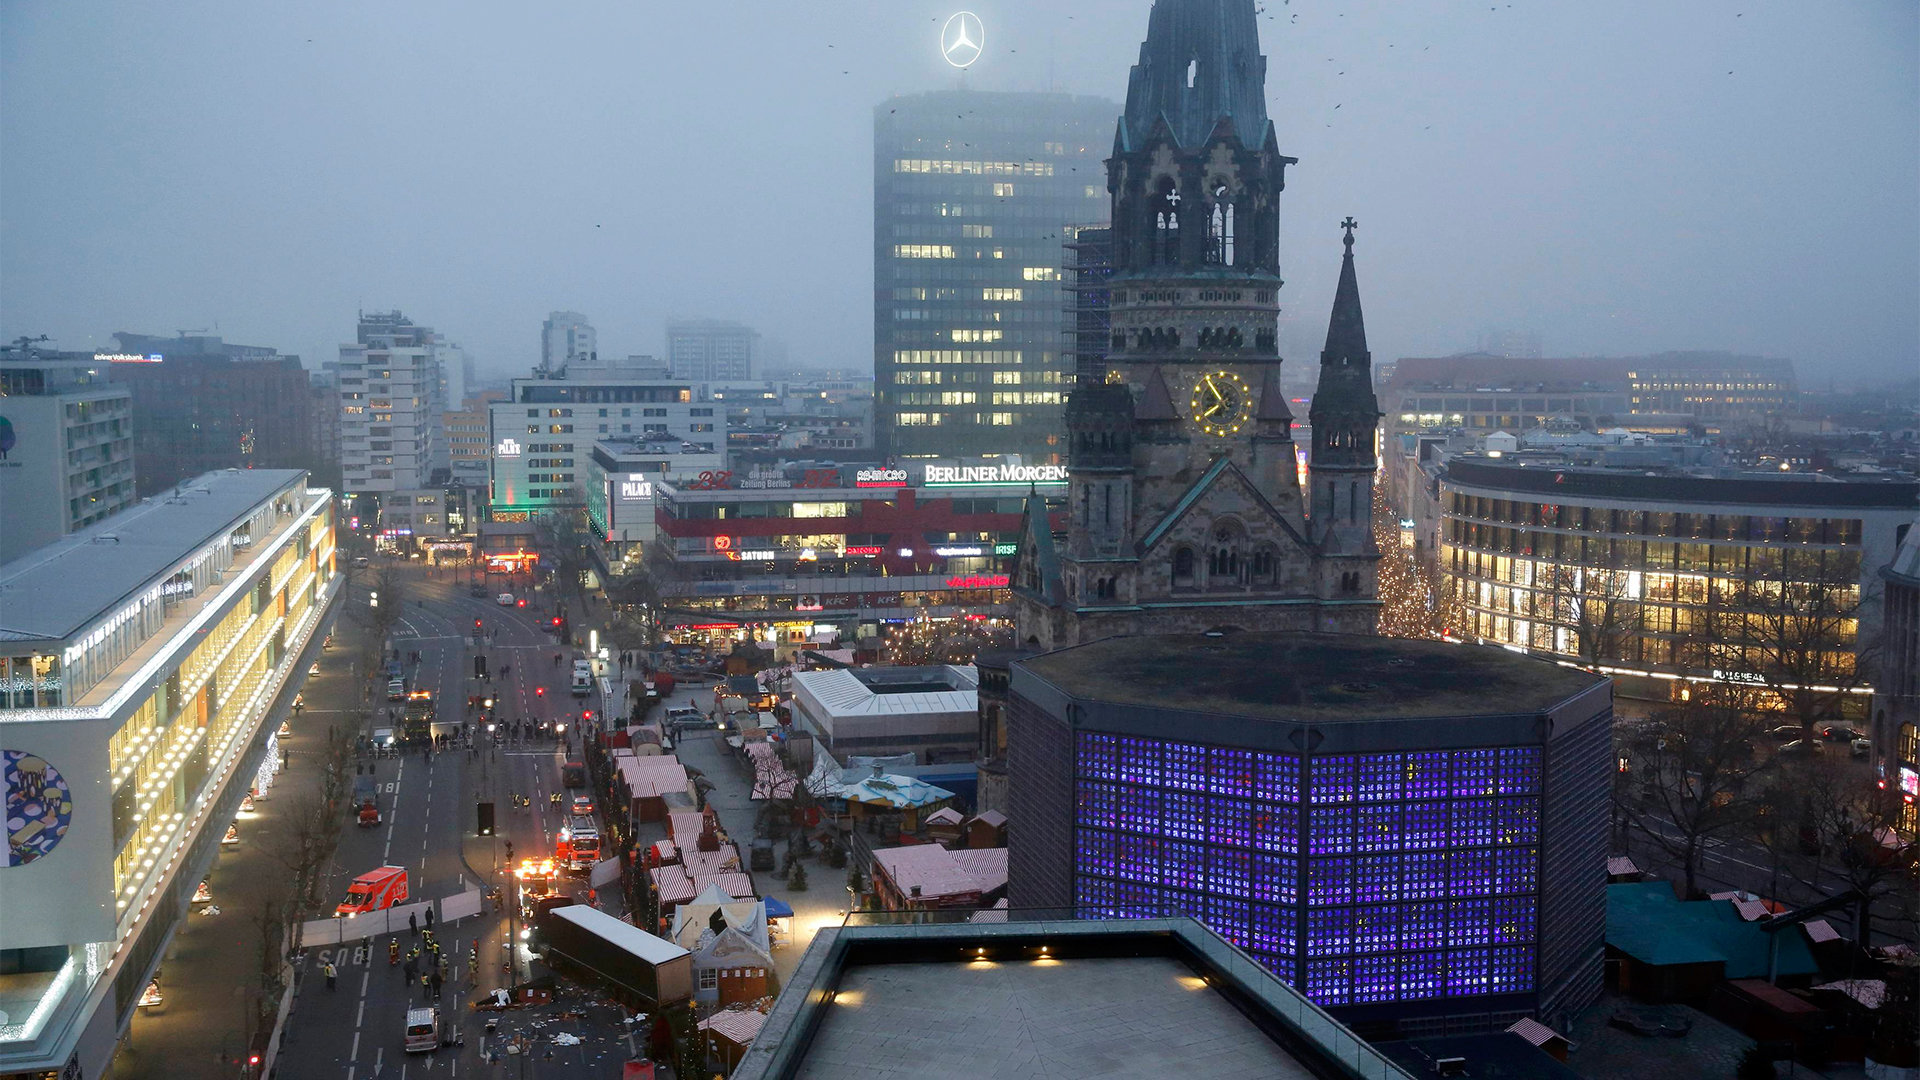 Nach dem Anschlag auf dem Weihnachtsmarkt am Berliner Breitscheidplatz | Bildquelle: REUTERS